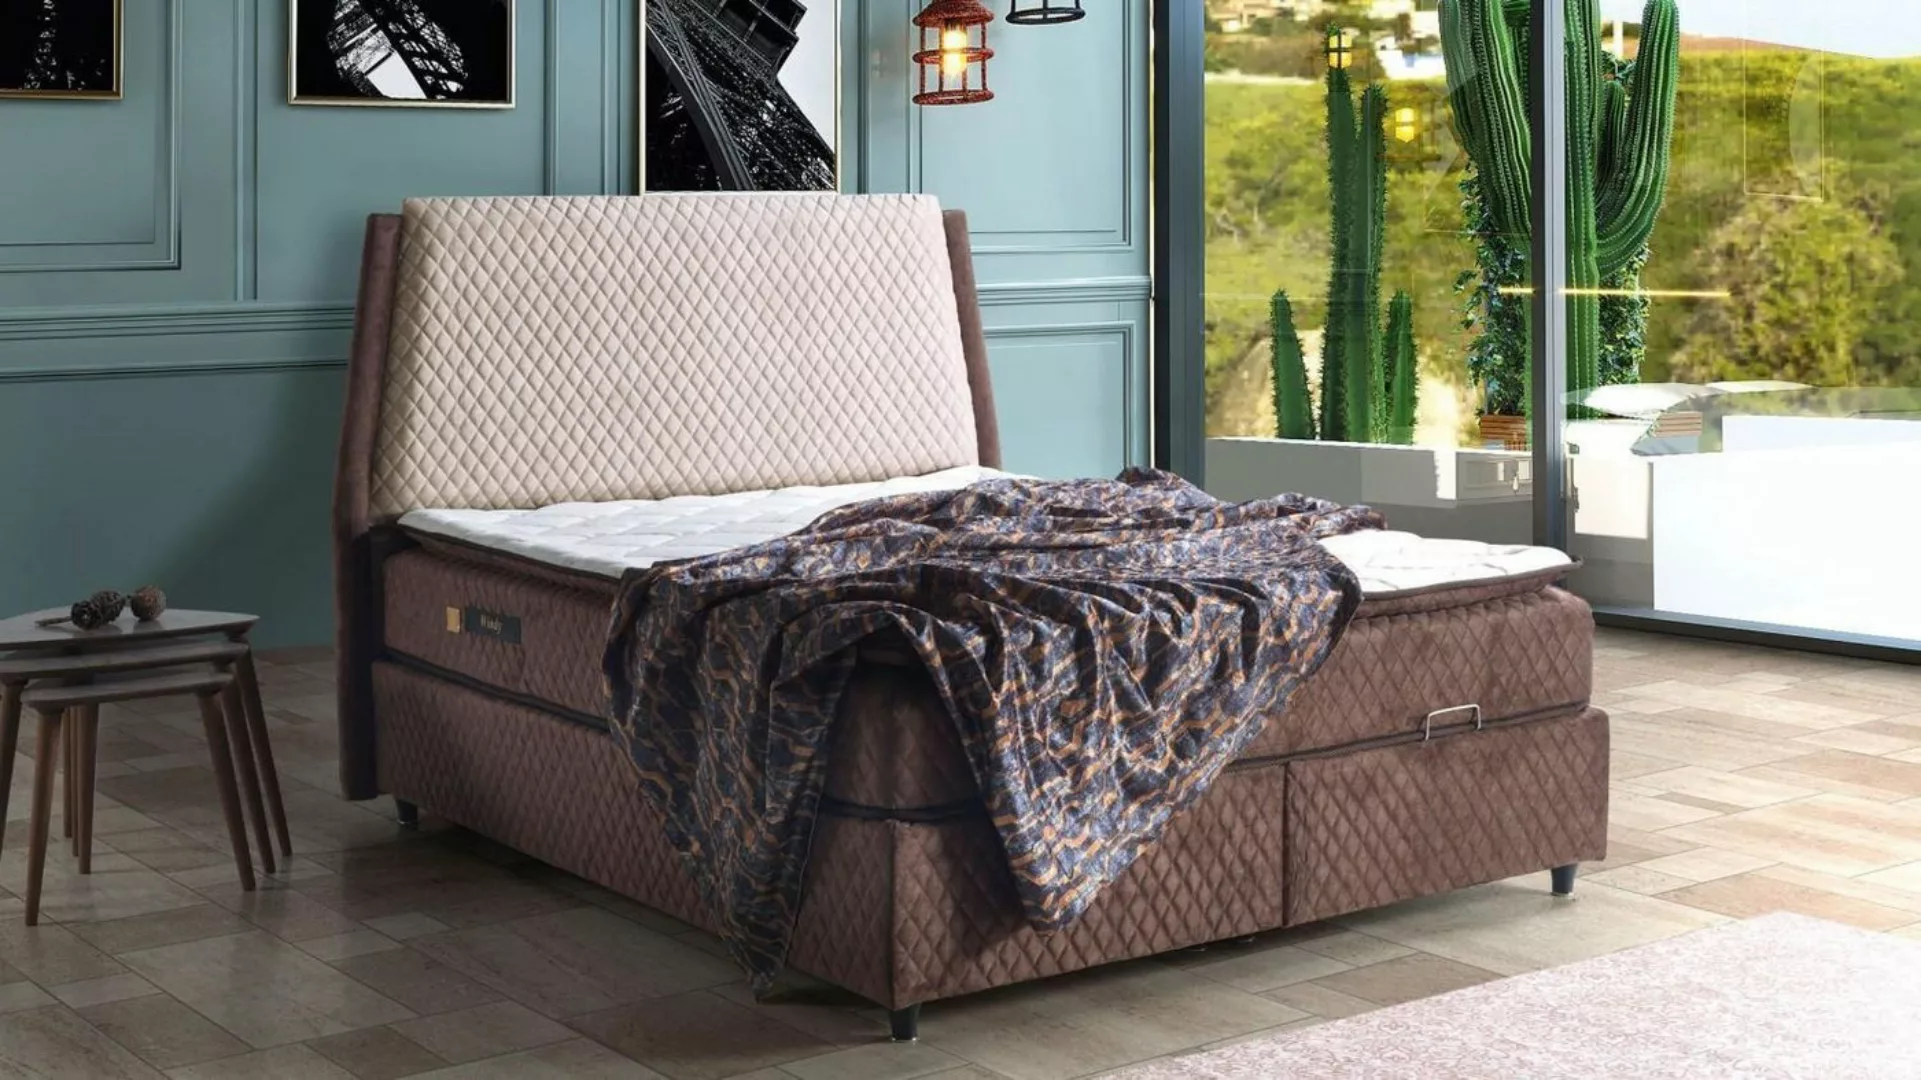 JVmoebel Bett Bett Design Betten Luxus Betten Polster Schlafzimmer Möbel Bo günstig online kaufen